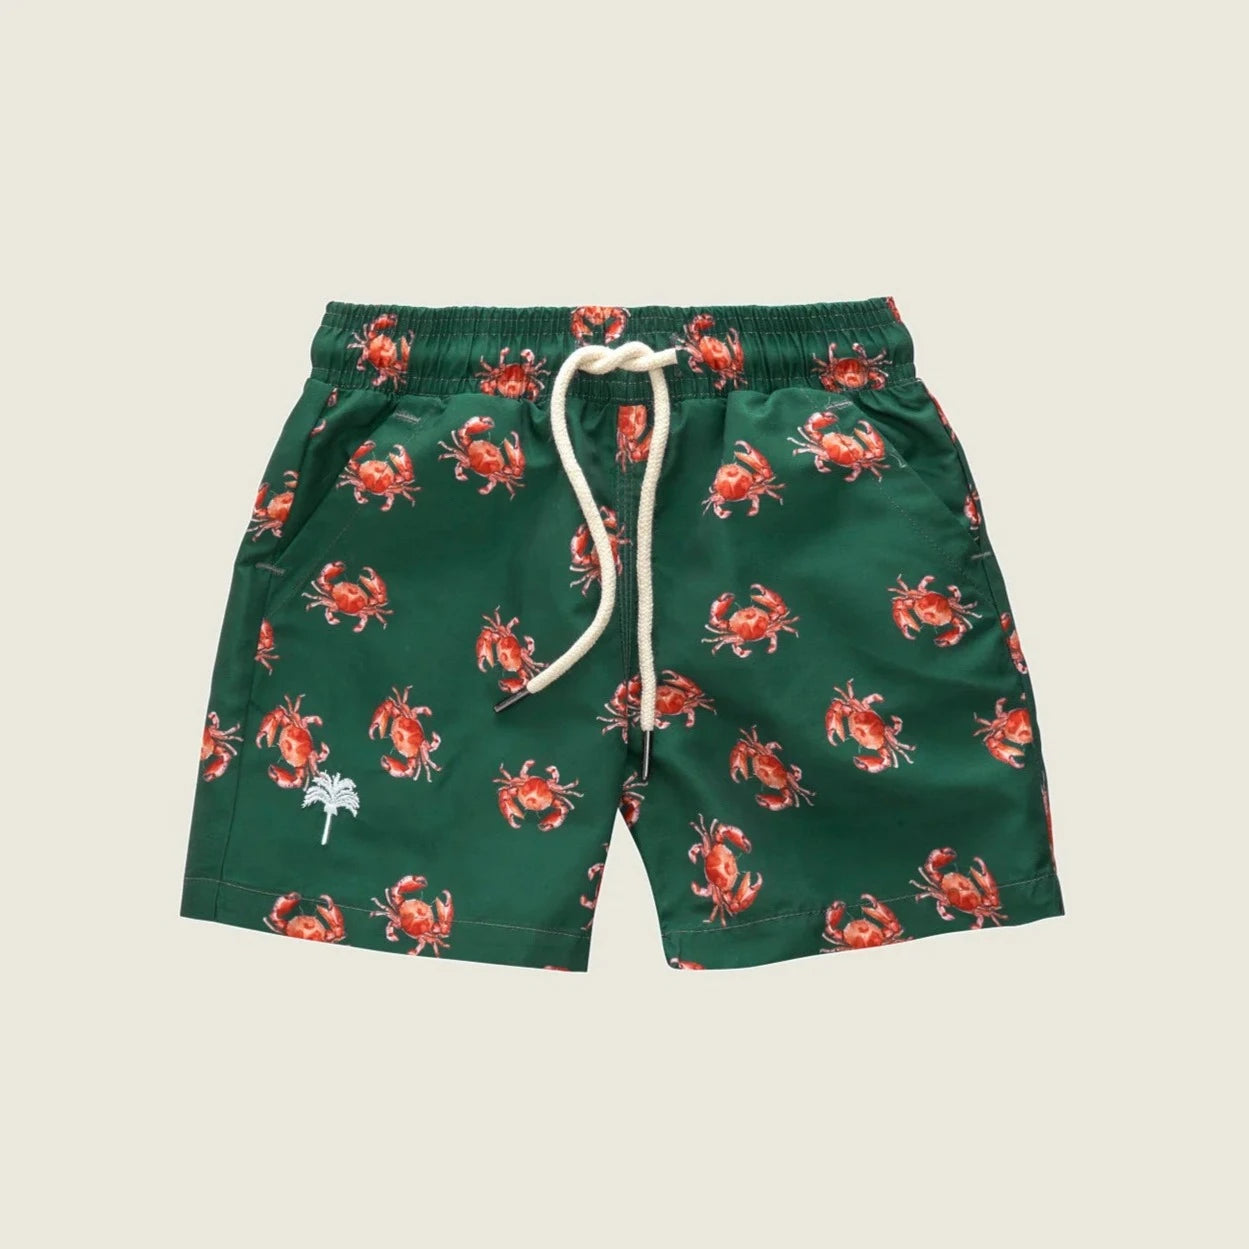 Oas - Crab Swim Shorts